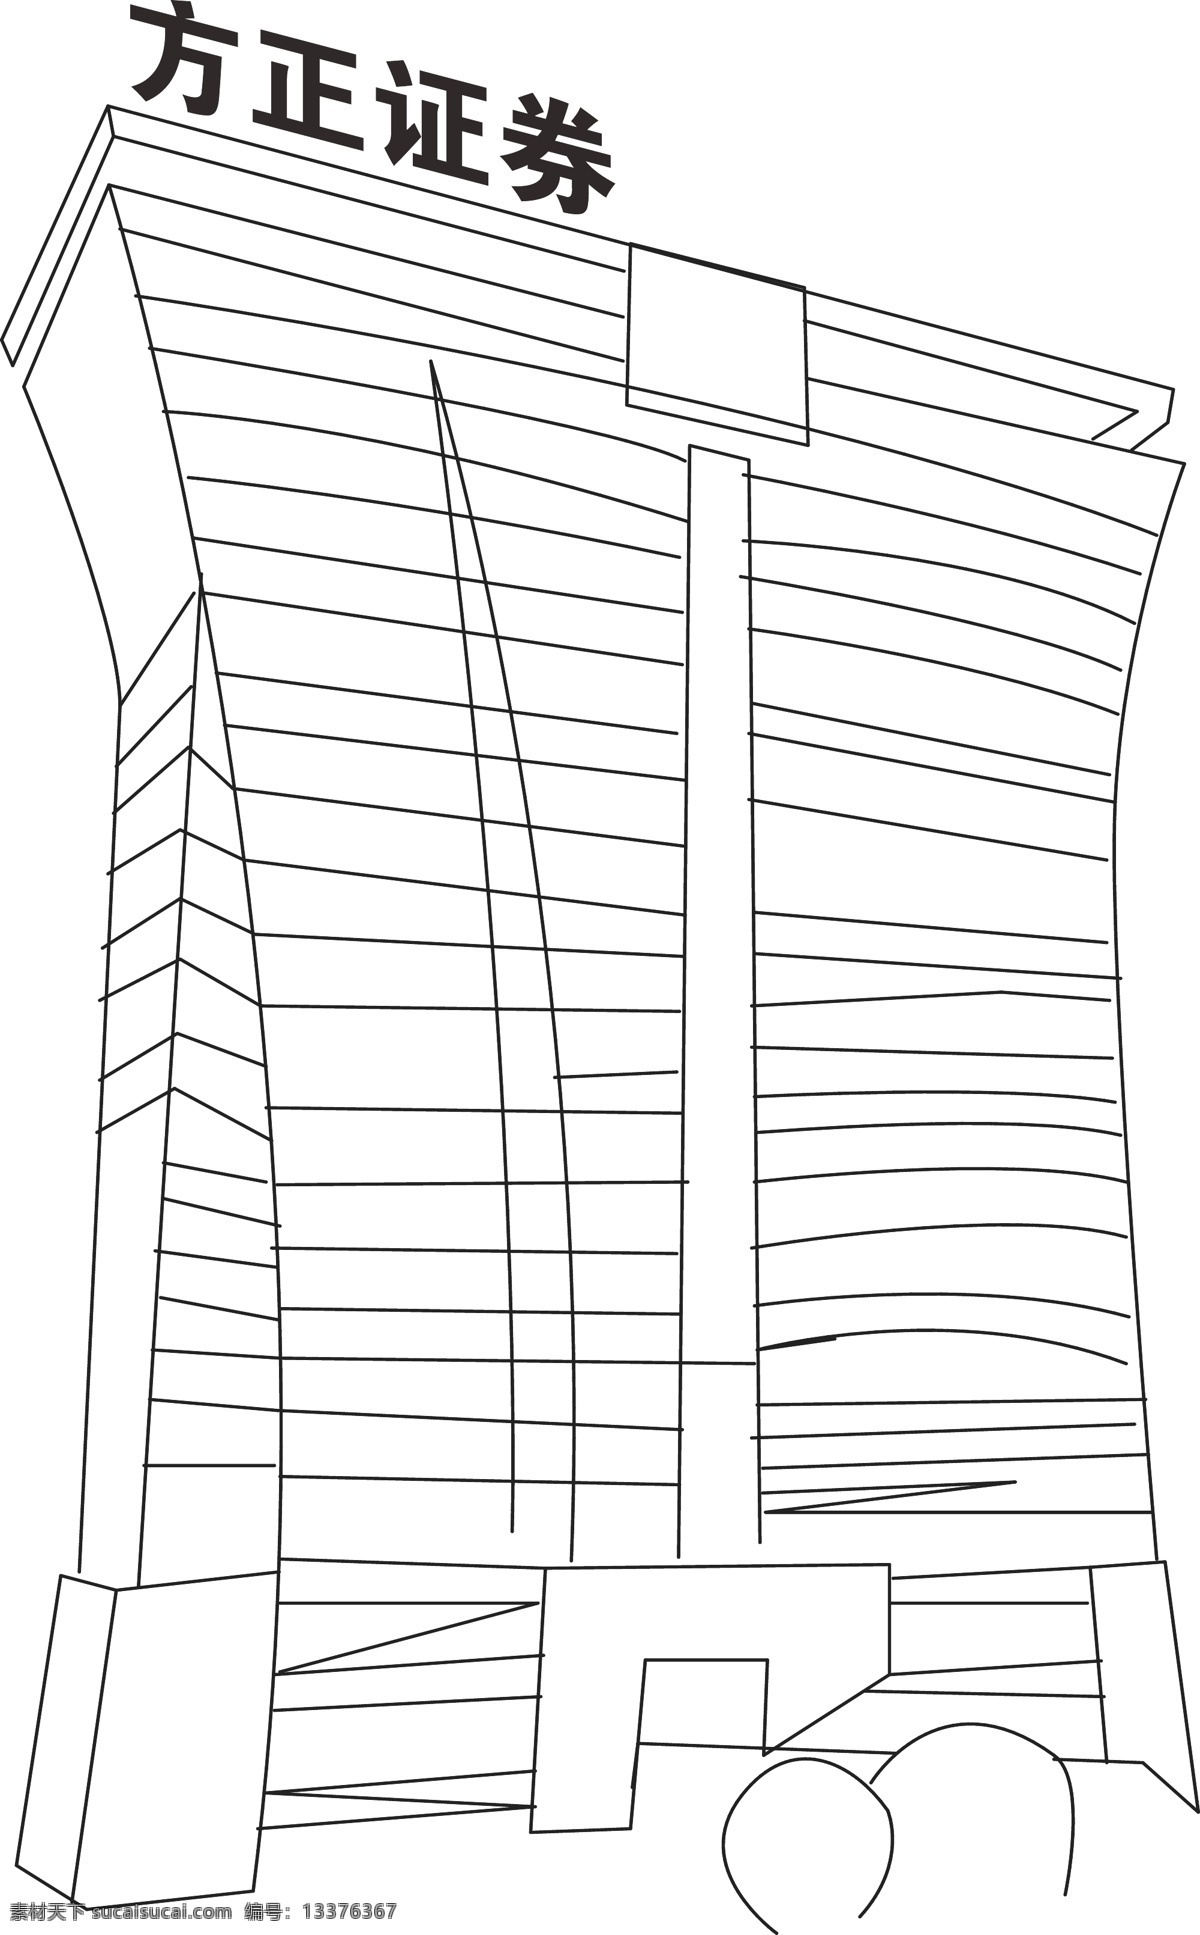 标志性 长沙 城市 城市建筑 建筑 建筑家居 线图 华侨 国际大厦 矢量 模板下载 矢量图